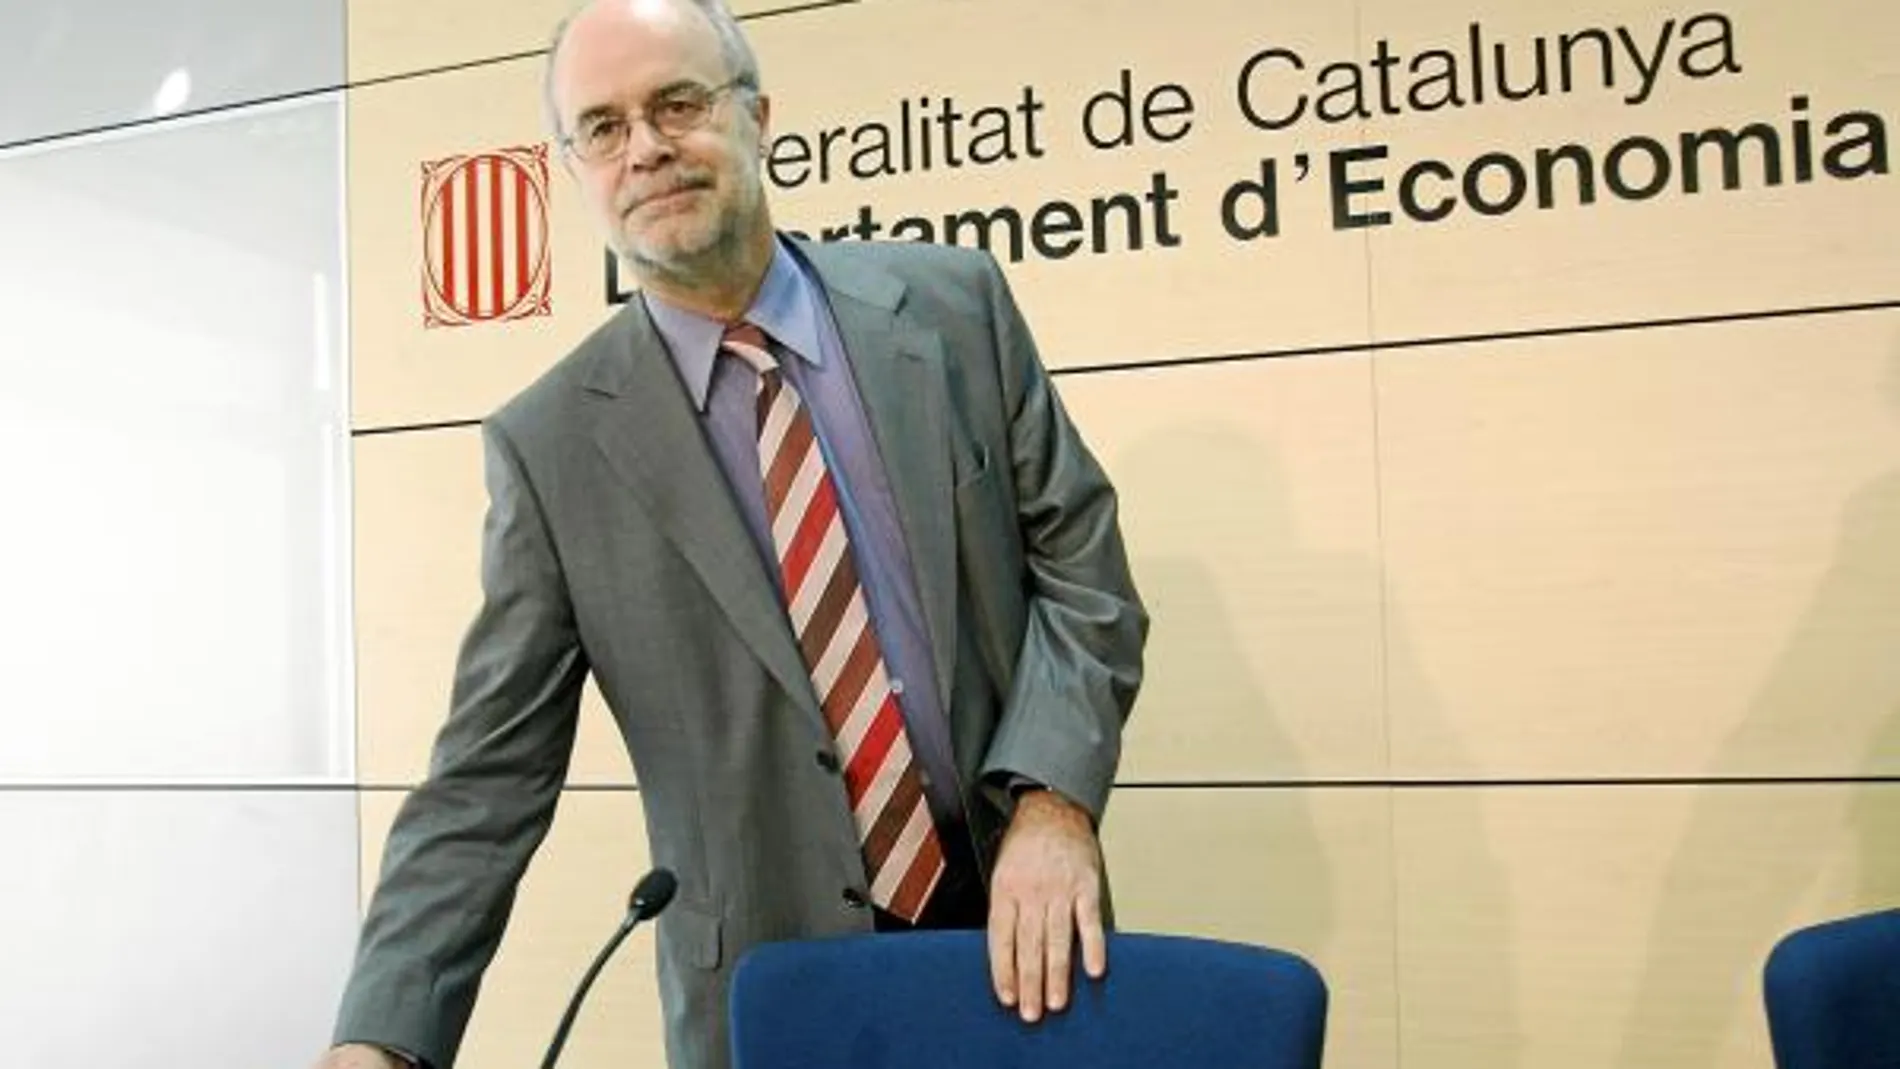 El conseller Castells ha dirigido la emisión de bonos ante los problemas de liquidez de la Generalitat